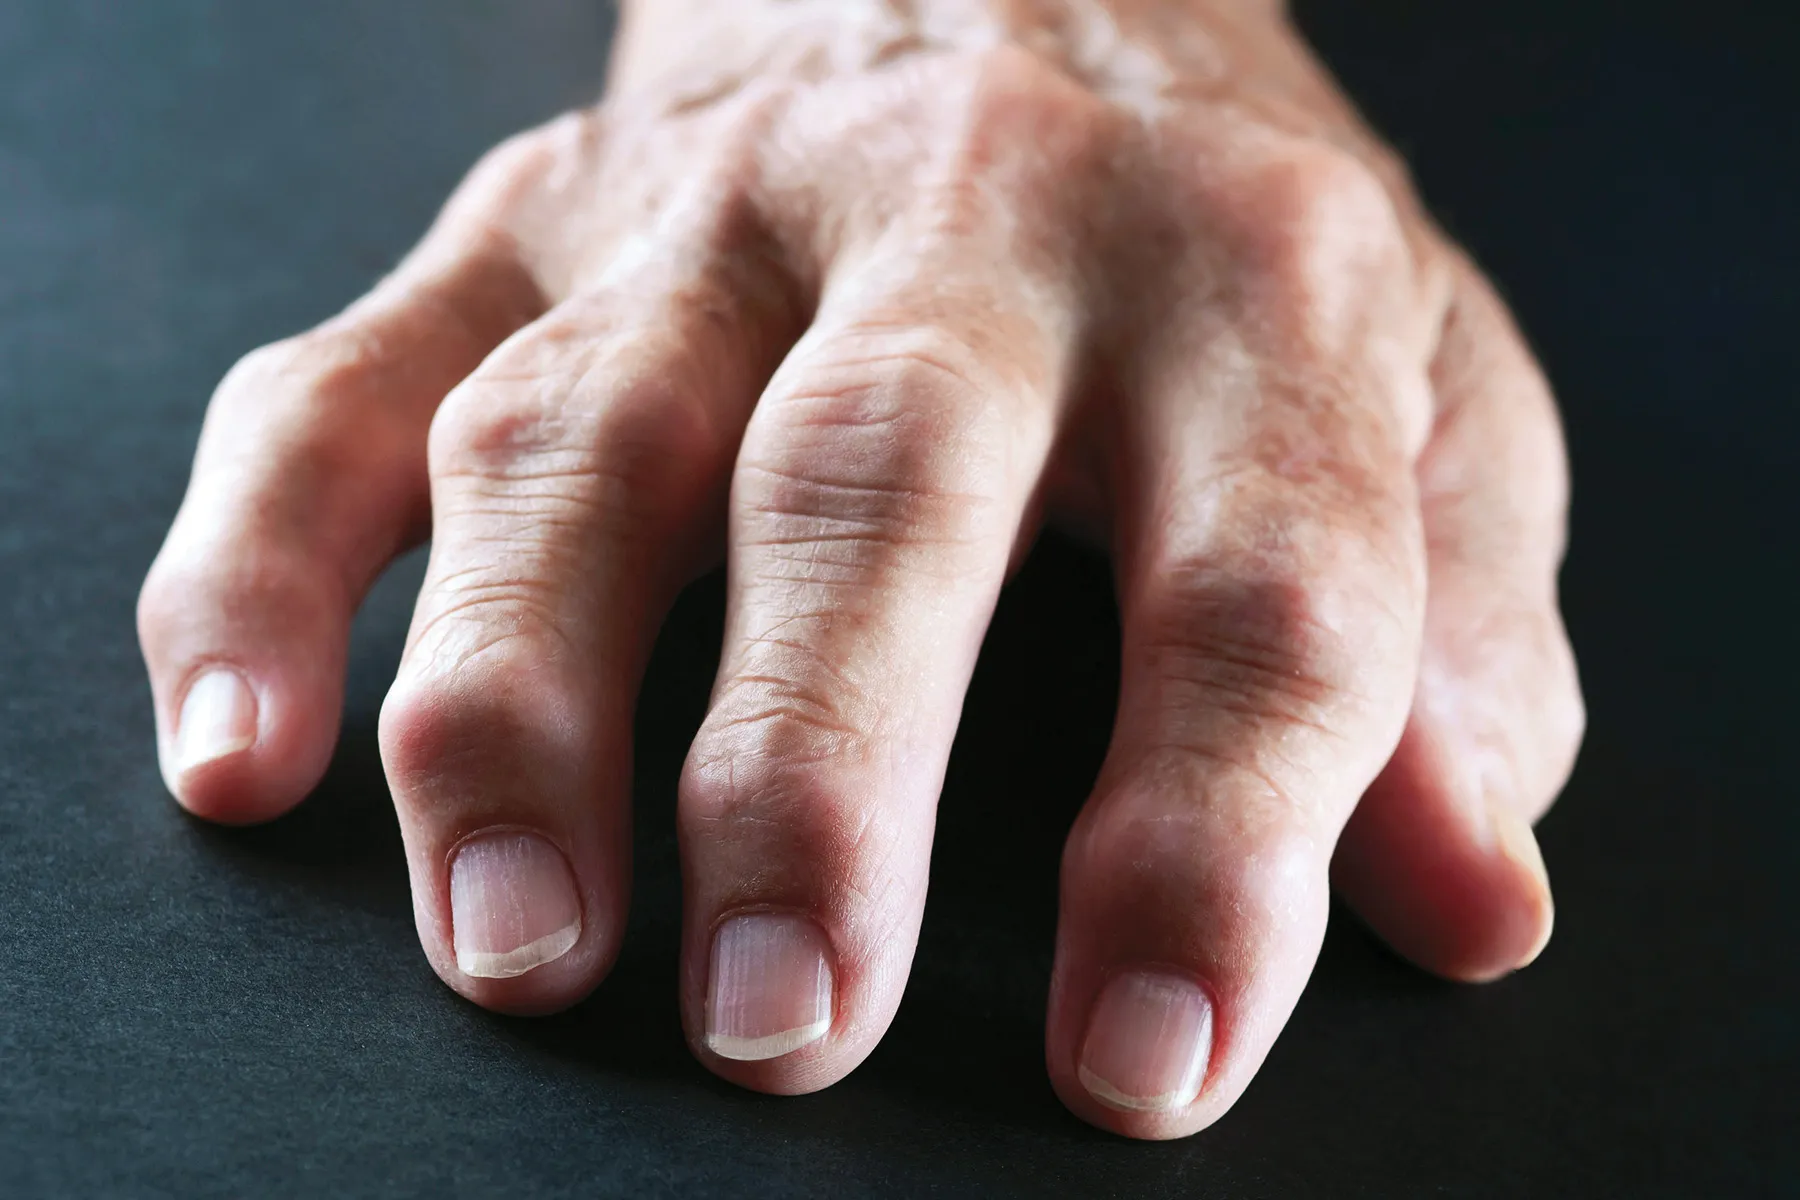 rheumatoid arthritis medscape térdízületek fájdalma mozgás közben